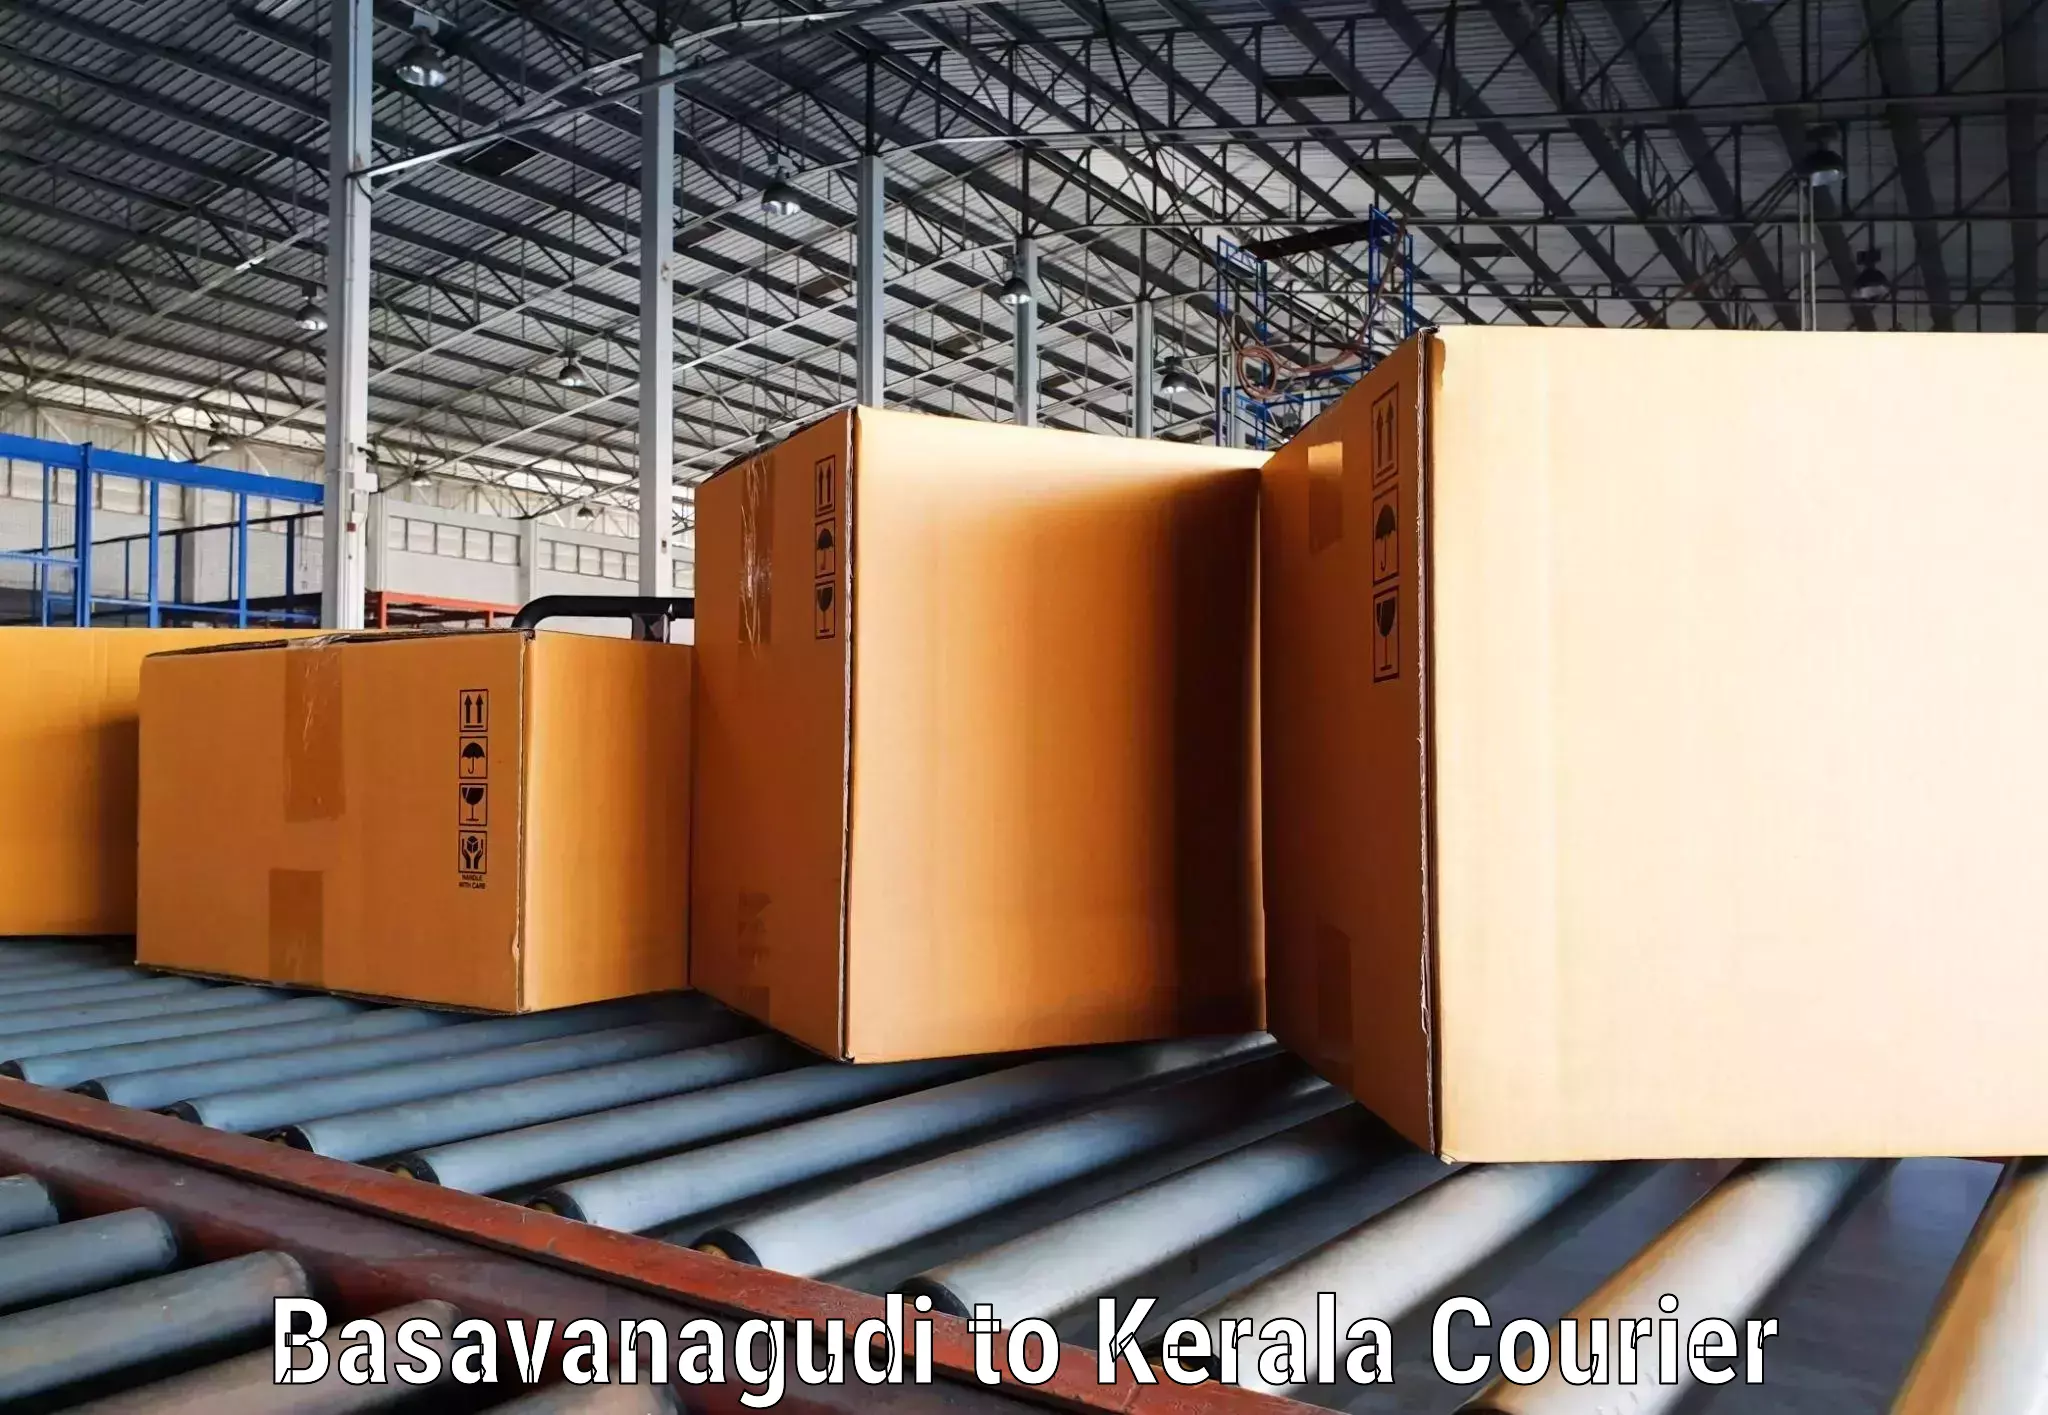 Flexible delivery schedules Basavanagudi to Kalpetta